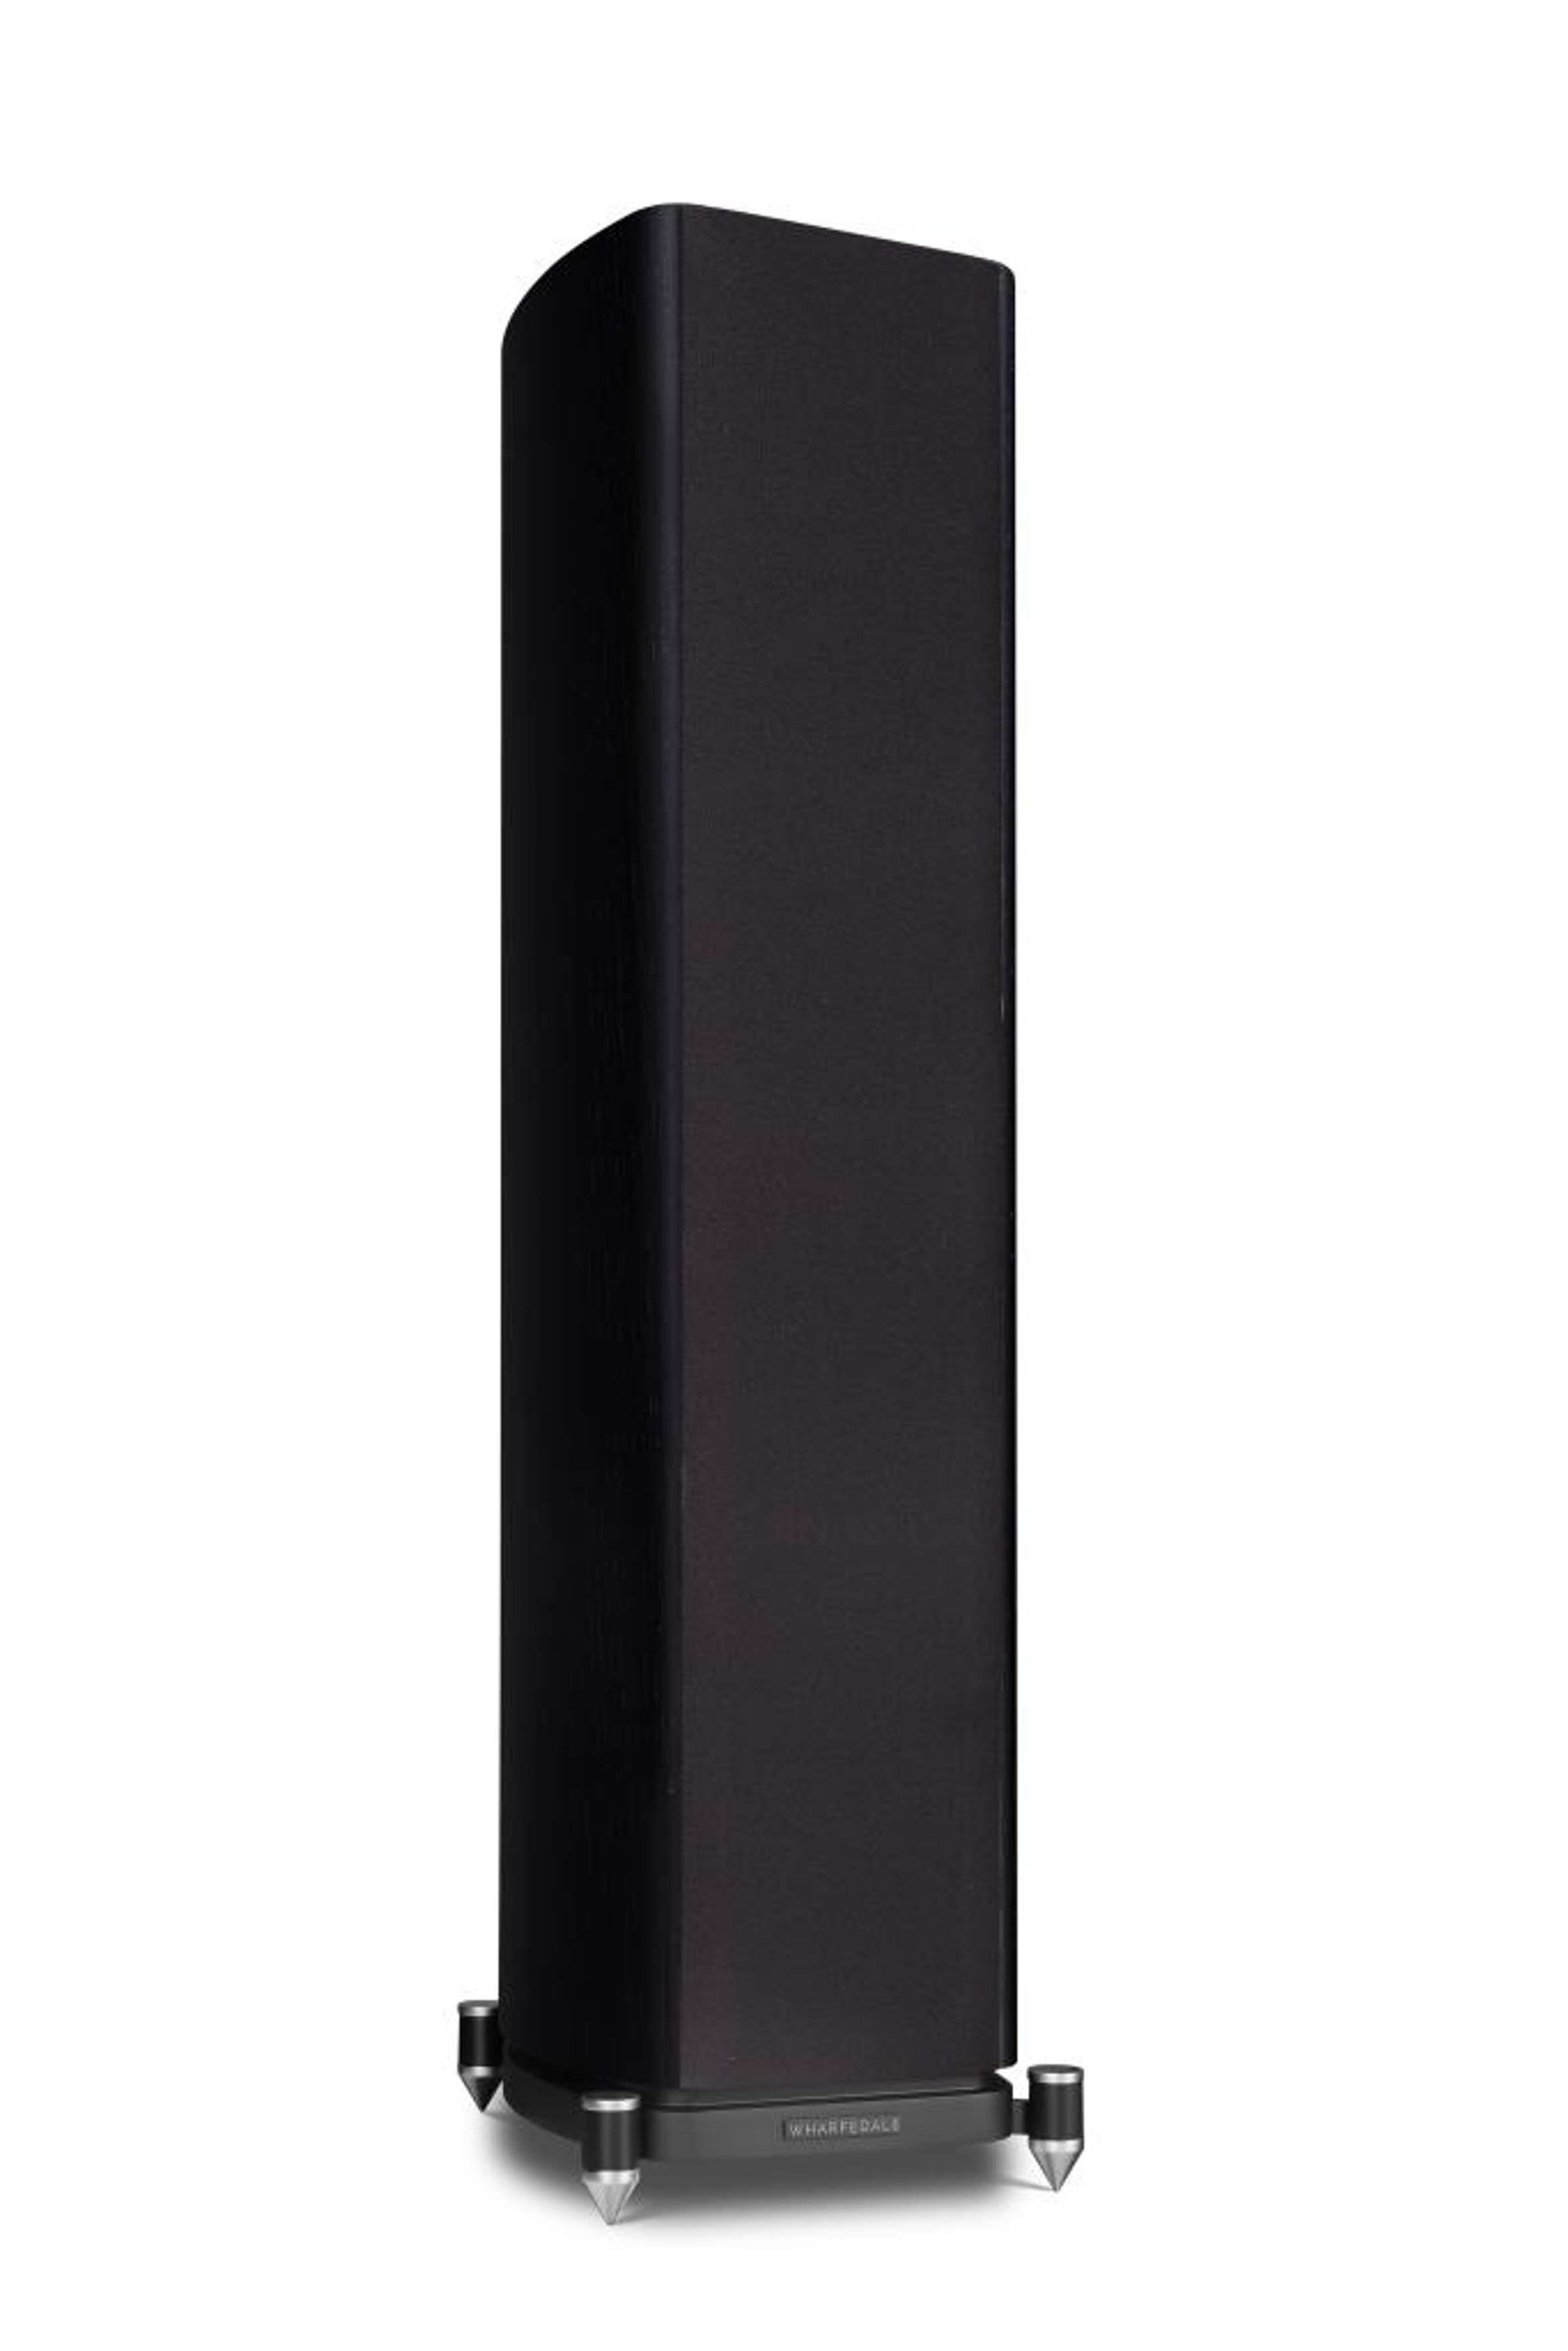 WHARFEDALE   EVO 4.3 Stand-Lautsprecher (wandnahe Aufstellung Sockel) durch Bassreflex im schwarz möglich